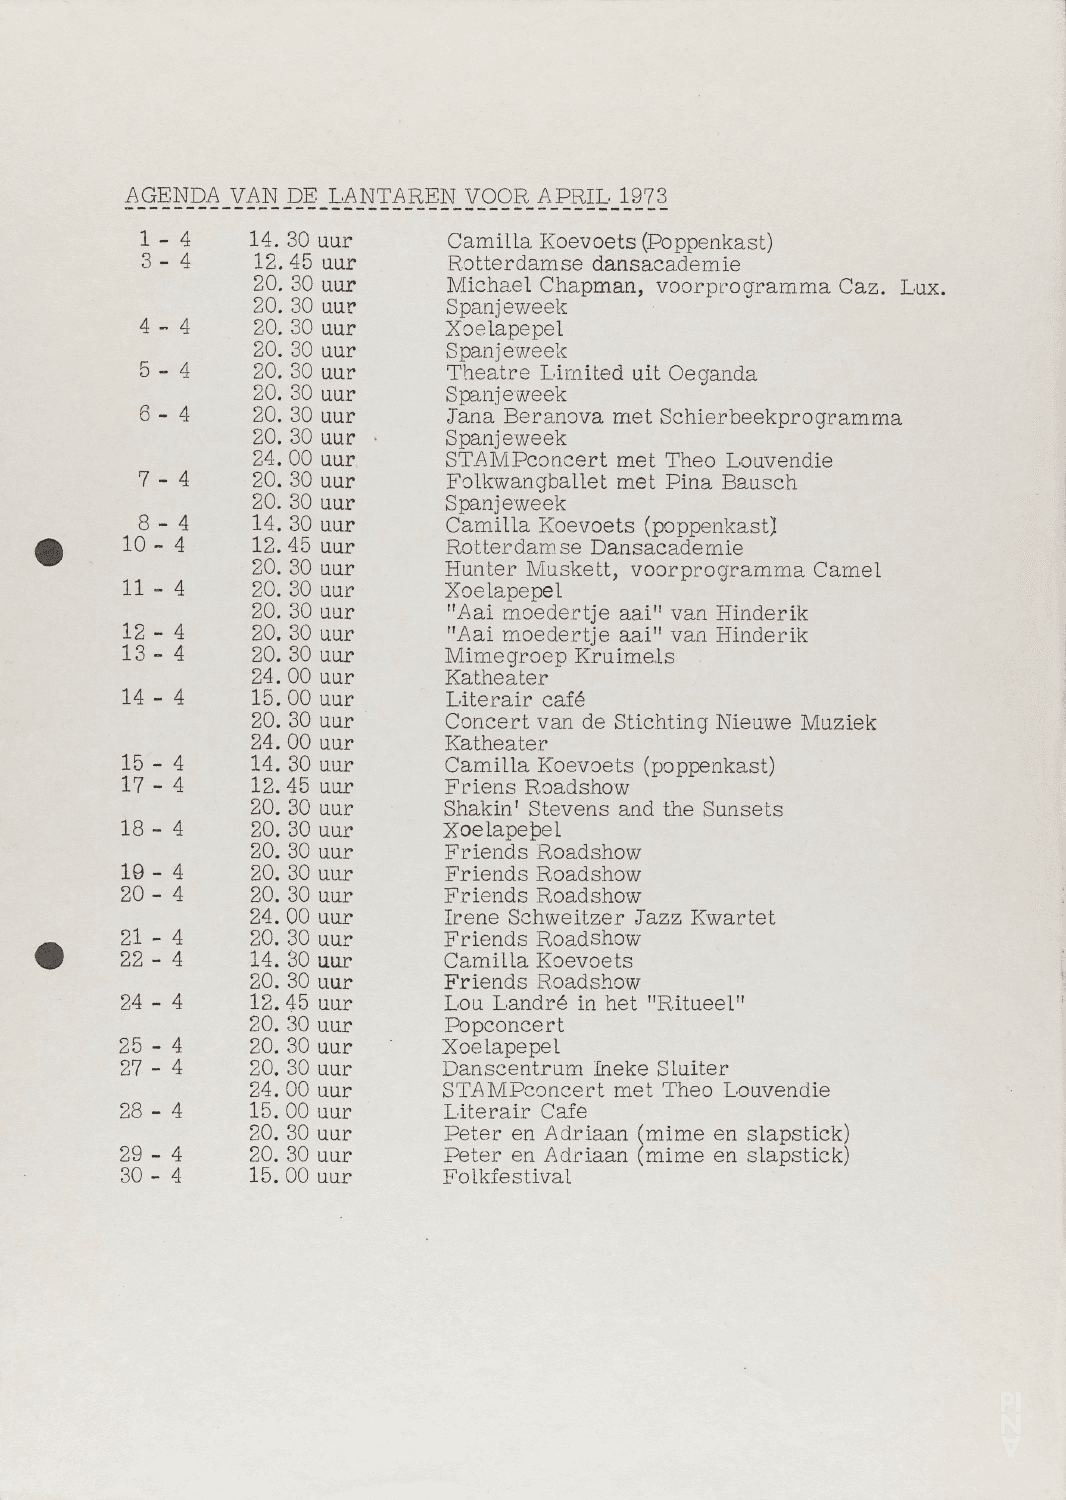 Season programme for “Nachnull (After Zero)”, “Aktionen für Tänzer”, “PHILIPS 836 885 DSY” and “Wiegenlied” by Pina Bausch and “Im Wind der Zeit” by Pina Bausch with Folkwangballett in in Rotterdam, April 7, 1973